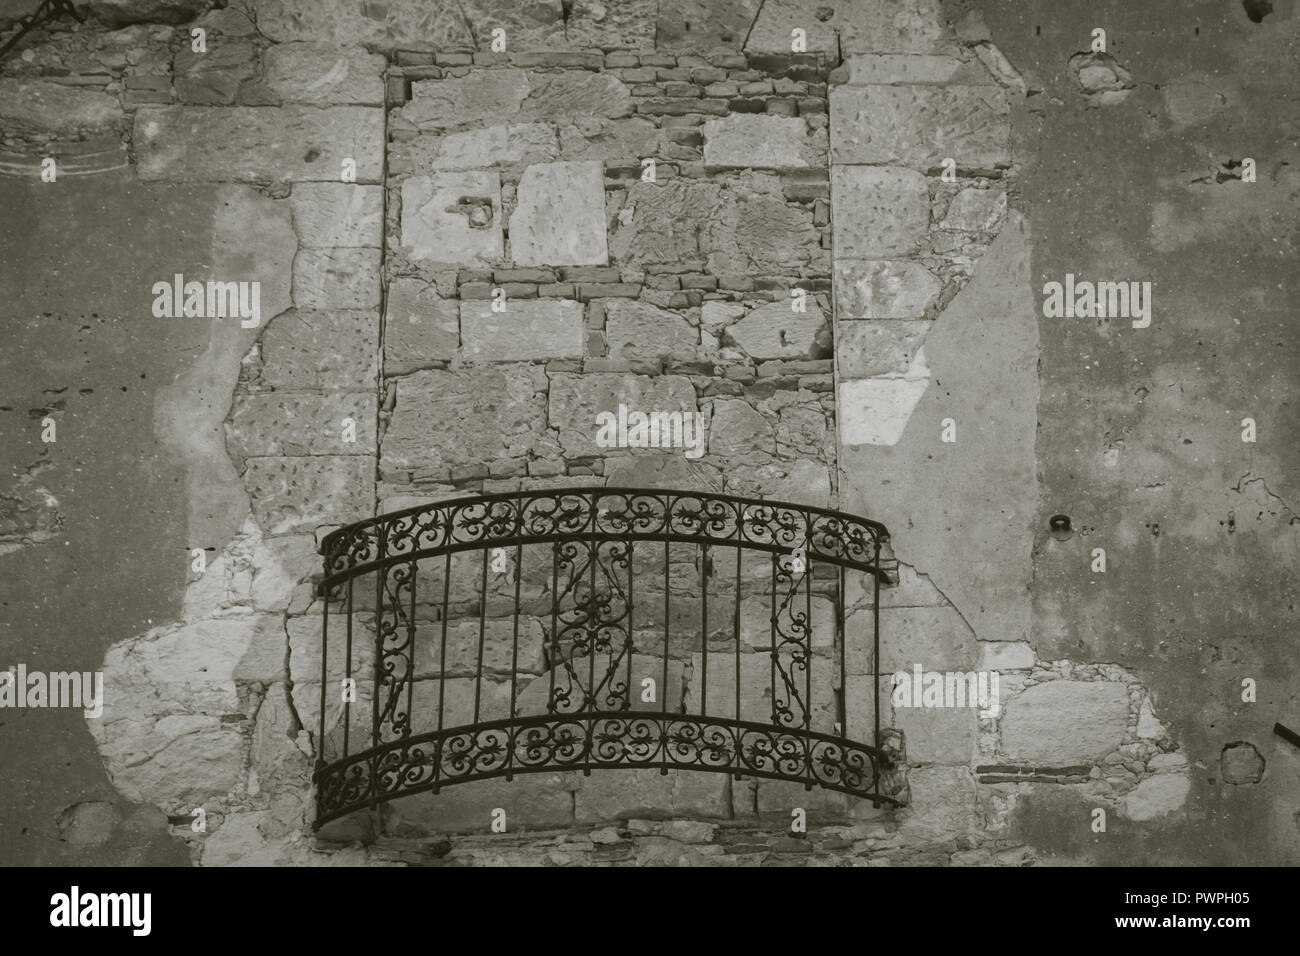 Finestra murata con ferro battuto balcone della vecchia casa nel quartiere del castello del centro storico di Cagliari, Sardegna, Italia. Immagine in bianco e nero e w Foto Stock